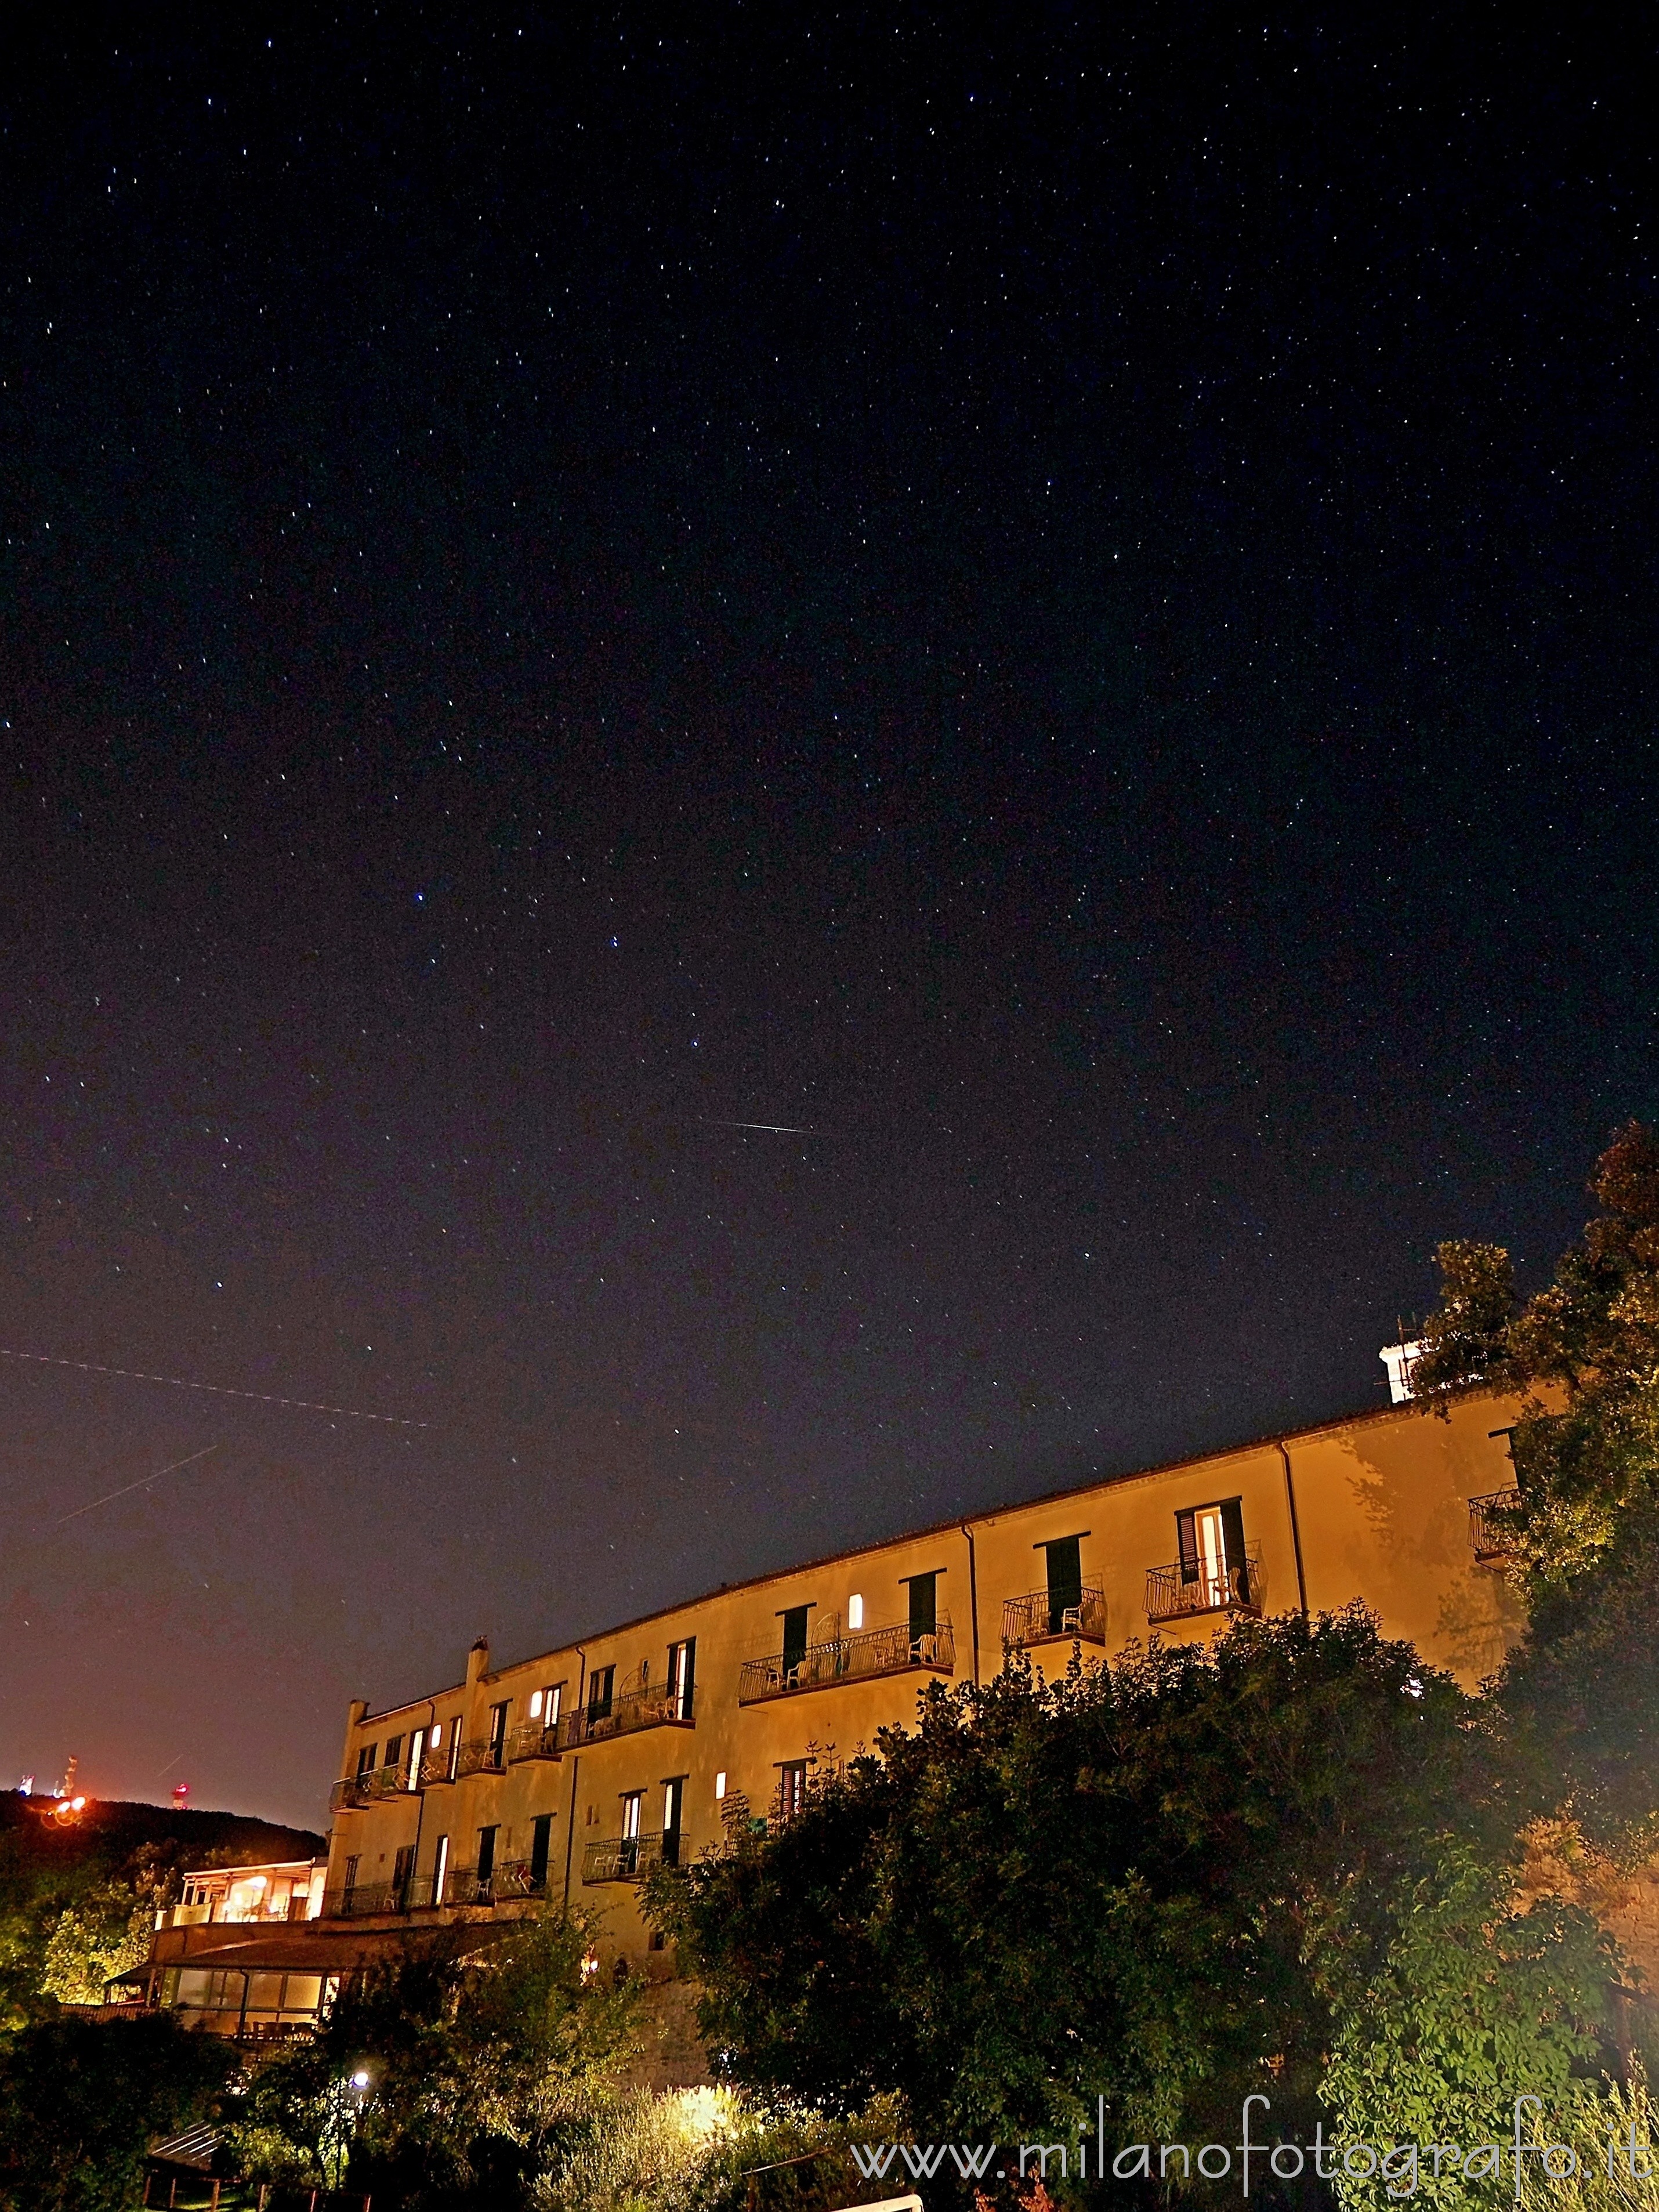 Sirolo (Ancona, Italy): The starry sky behind the Hotel Monteconero - Sirolo (Ancona, Italy)